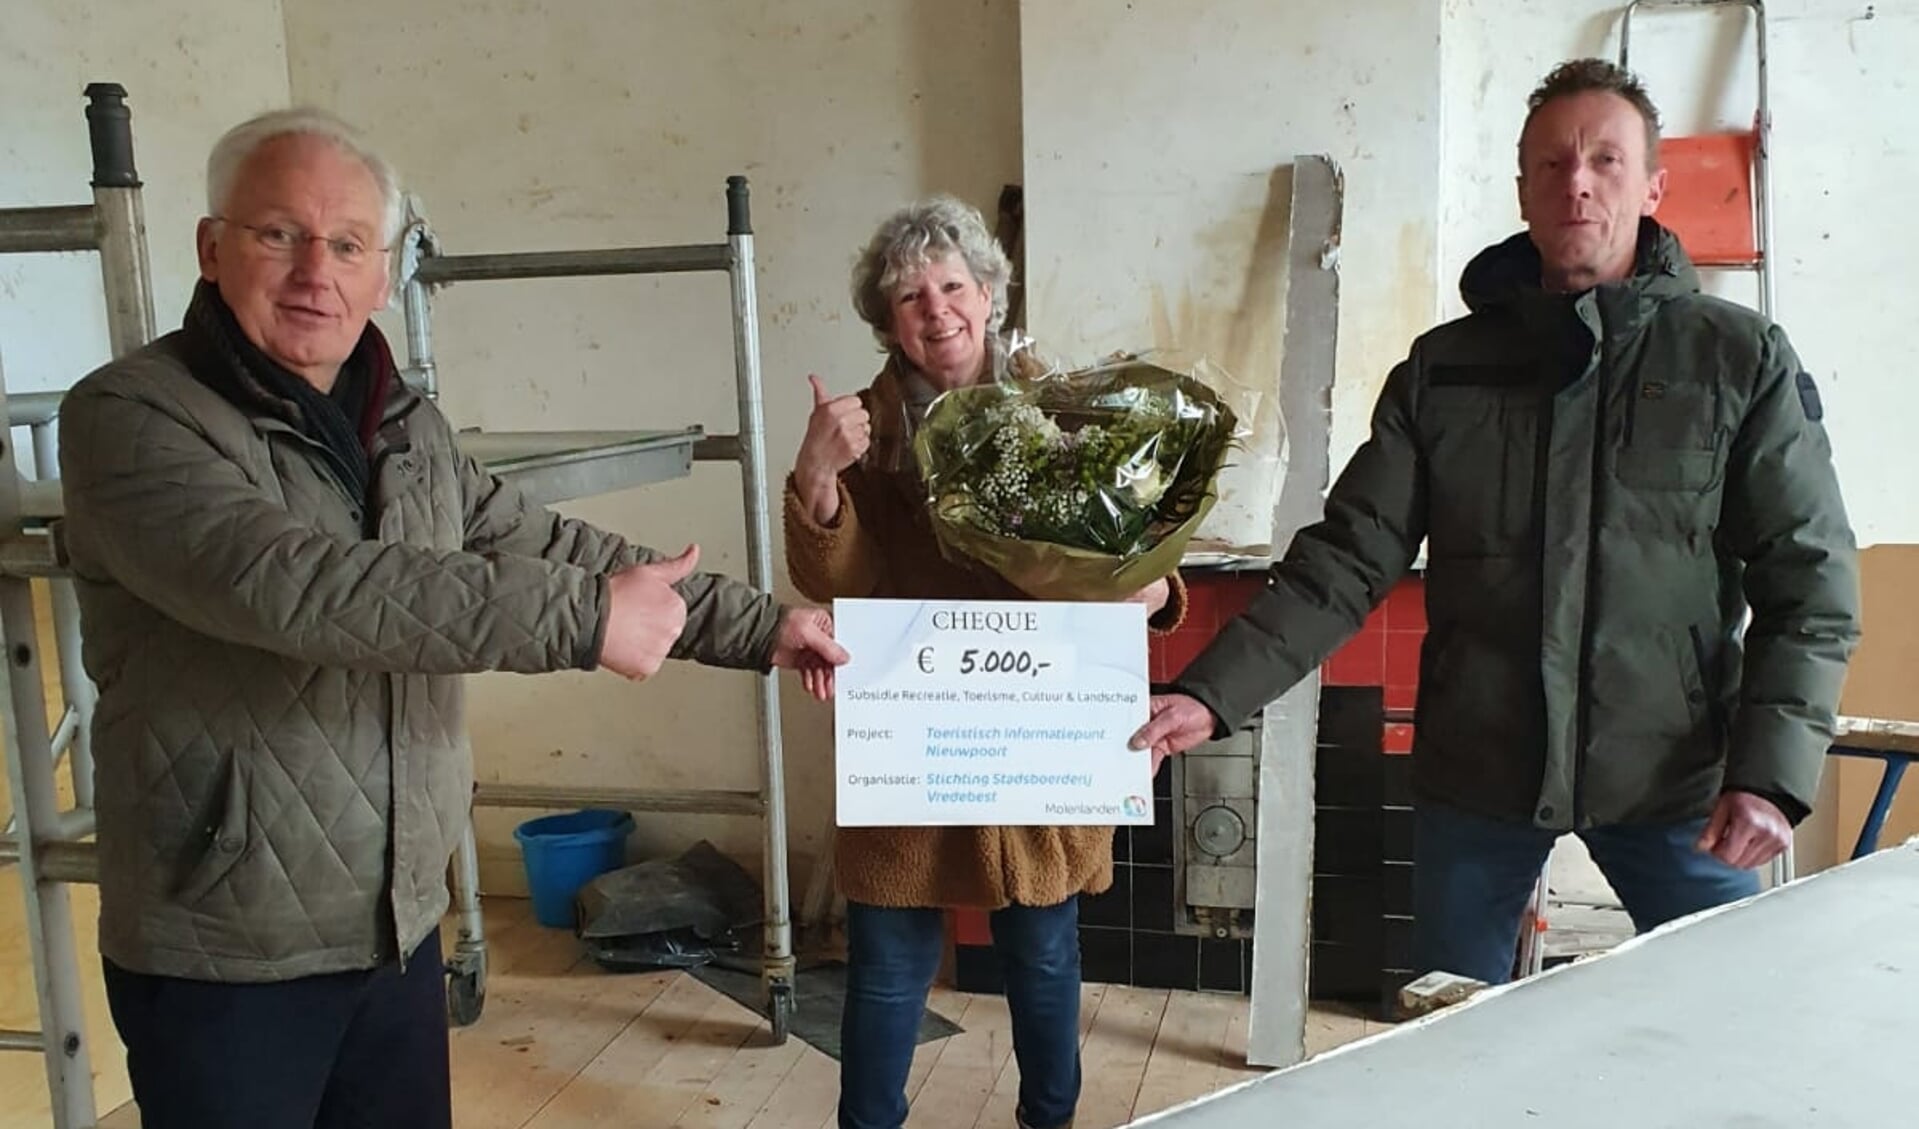 • Er was 5000 euro voor stichting Stadsboerderij Vredebest voor het project ‘Toeristisch Informatiepunt Nieuwpoort.